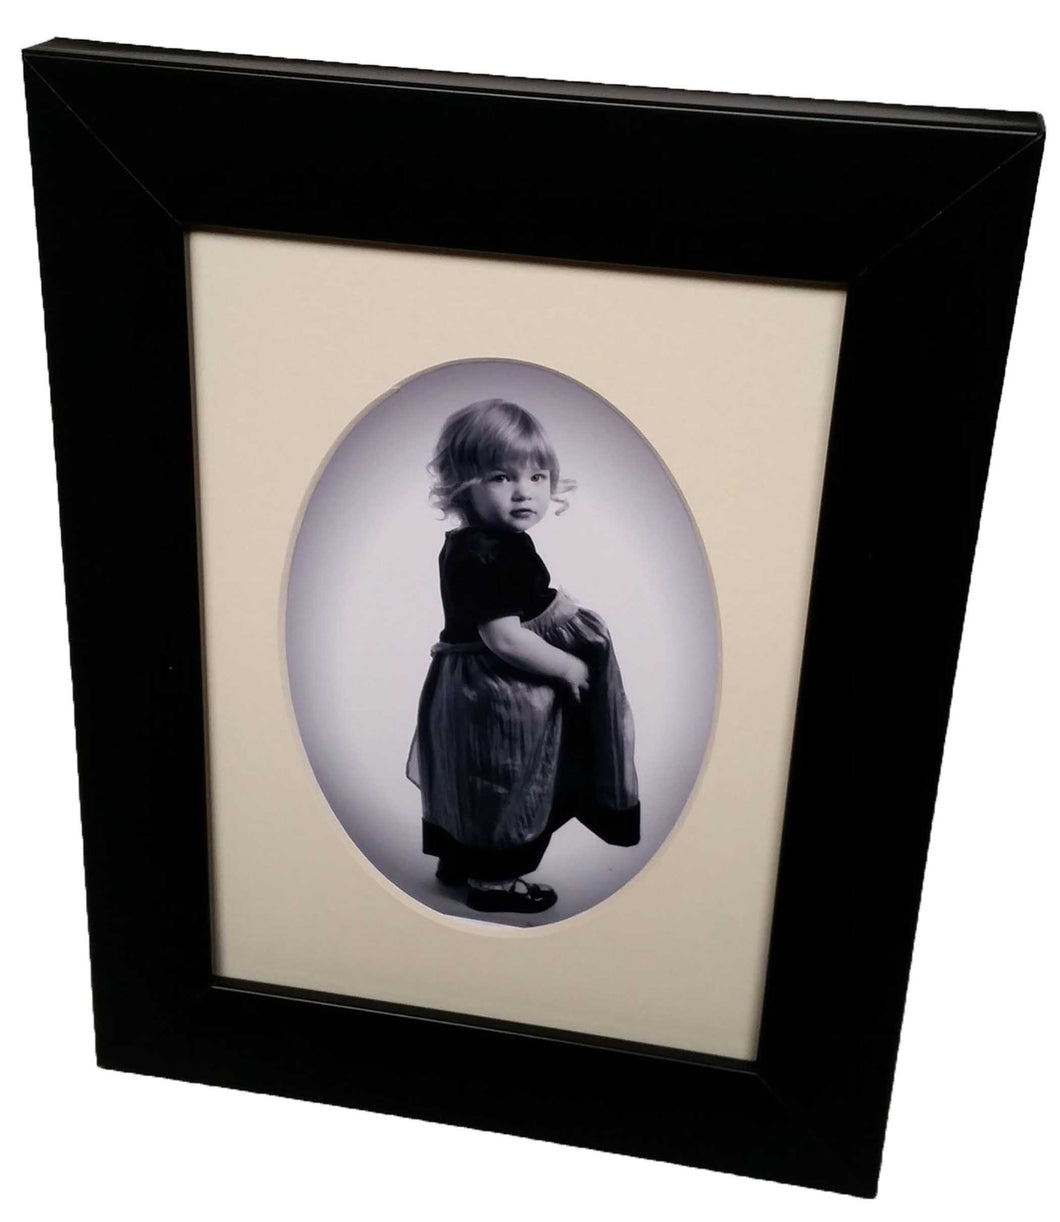 Made to Measure Picture frame Artwork Framing 30 mm Wide Black Moulding UK